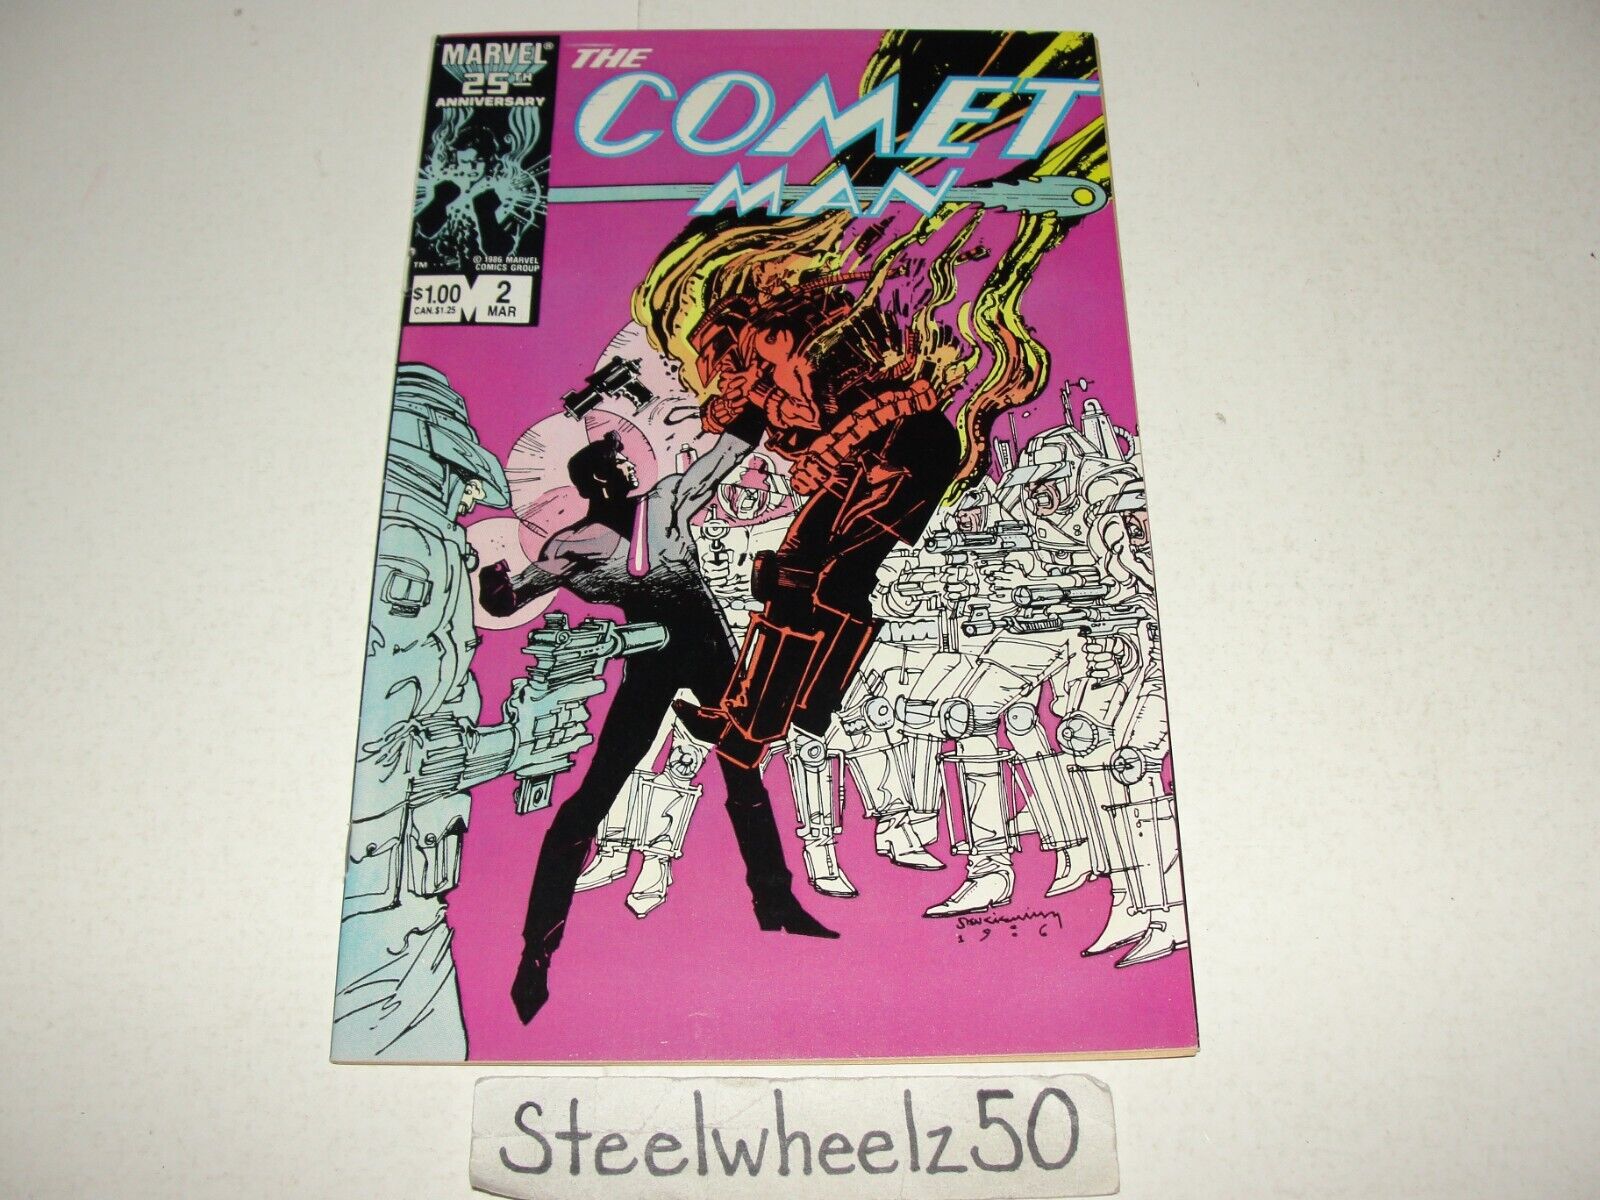 Comet Man #2 Comic Marvel 1987 Bill Sienkiewicz Cover Kelly Jones Bill Mumy